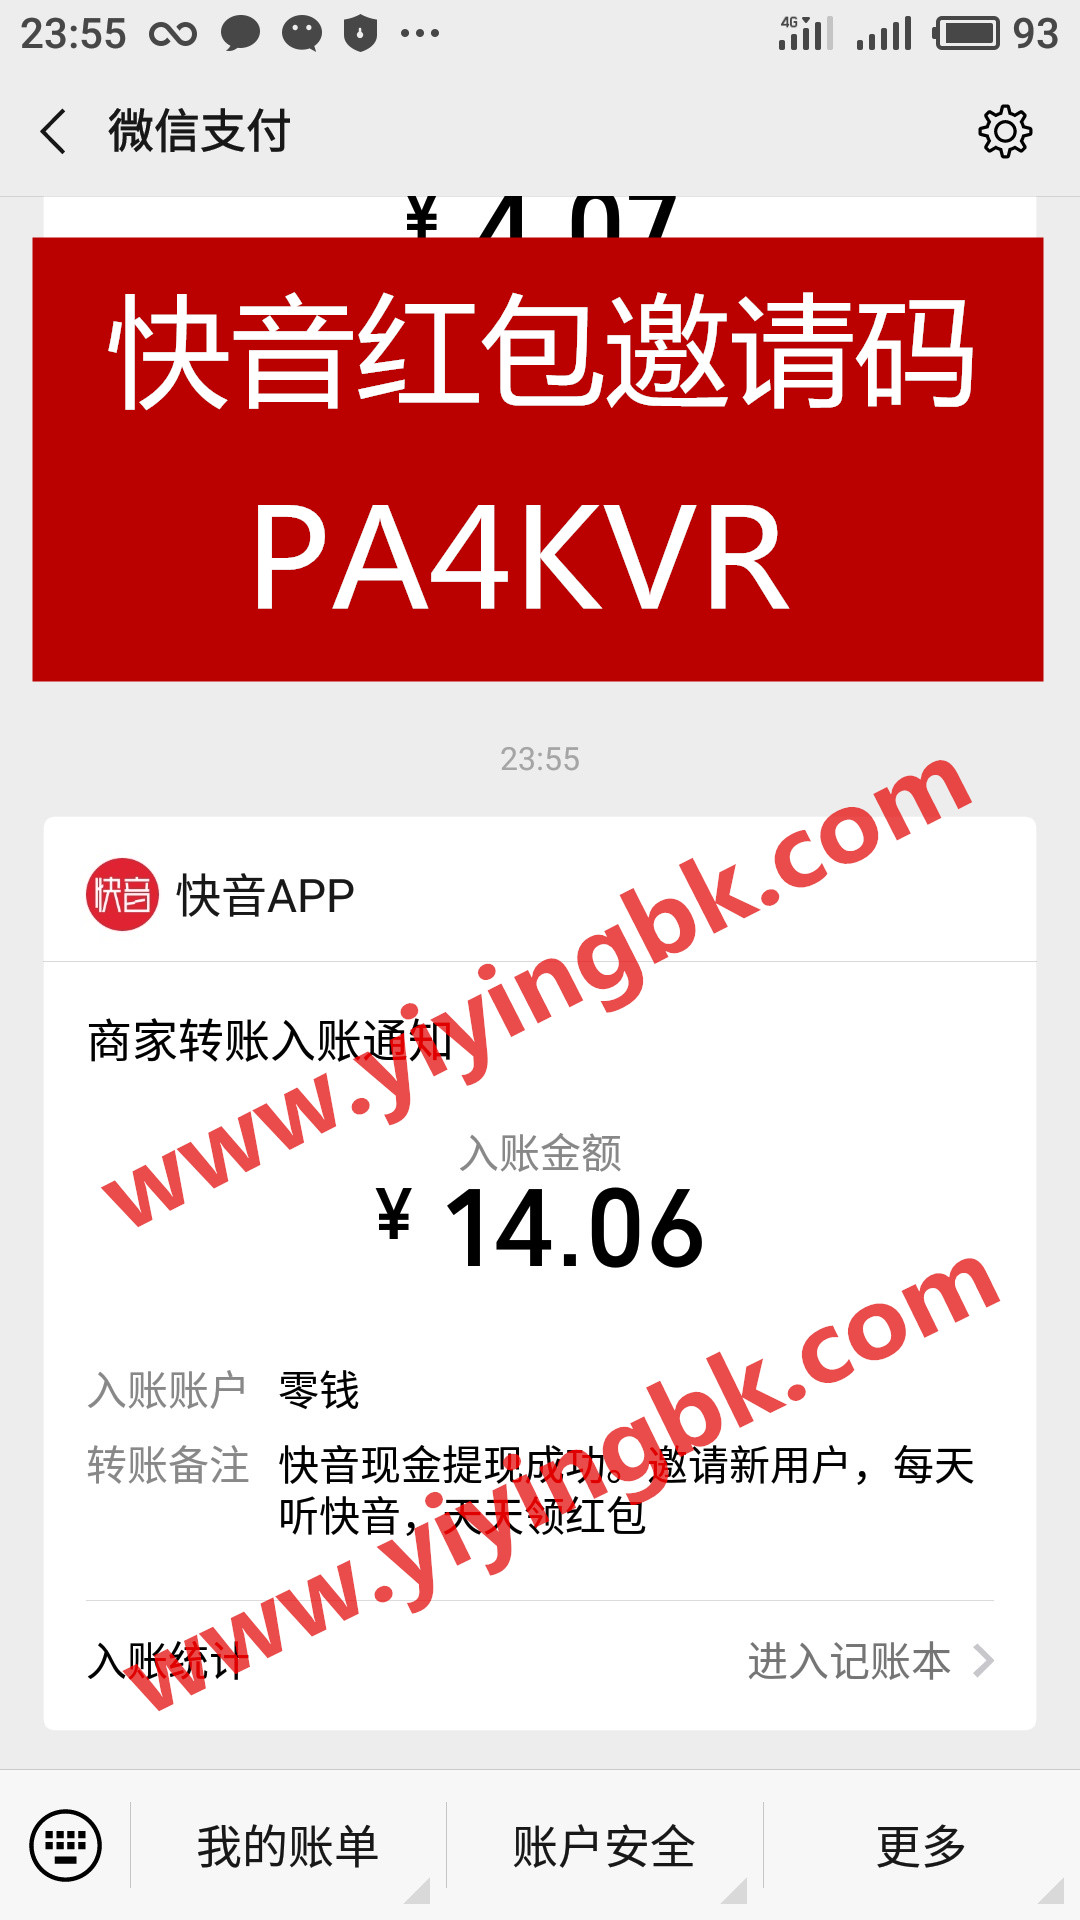 快音红包邀请码PA4KVR，免费听歌领红包赚零花钱，微信提现14.06元秒到账。www.yiyingbk.com